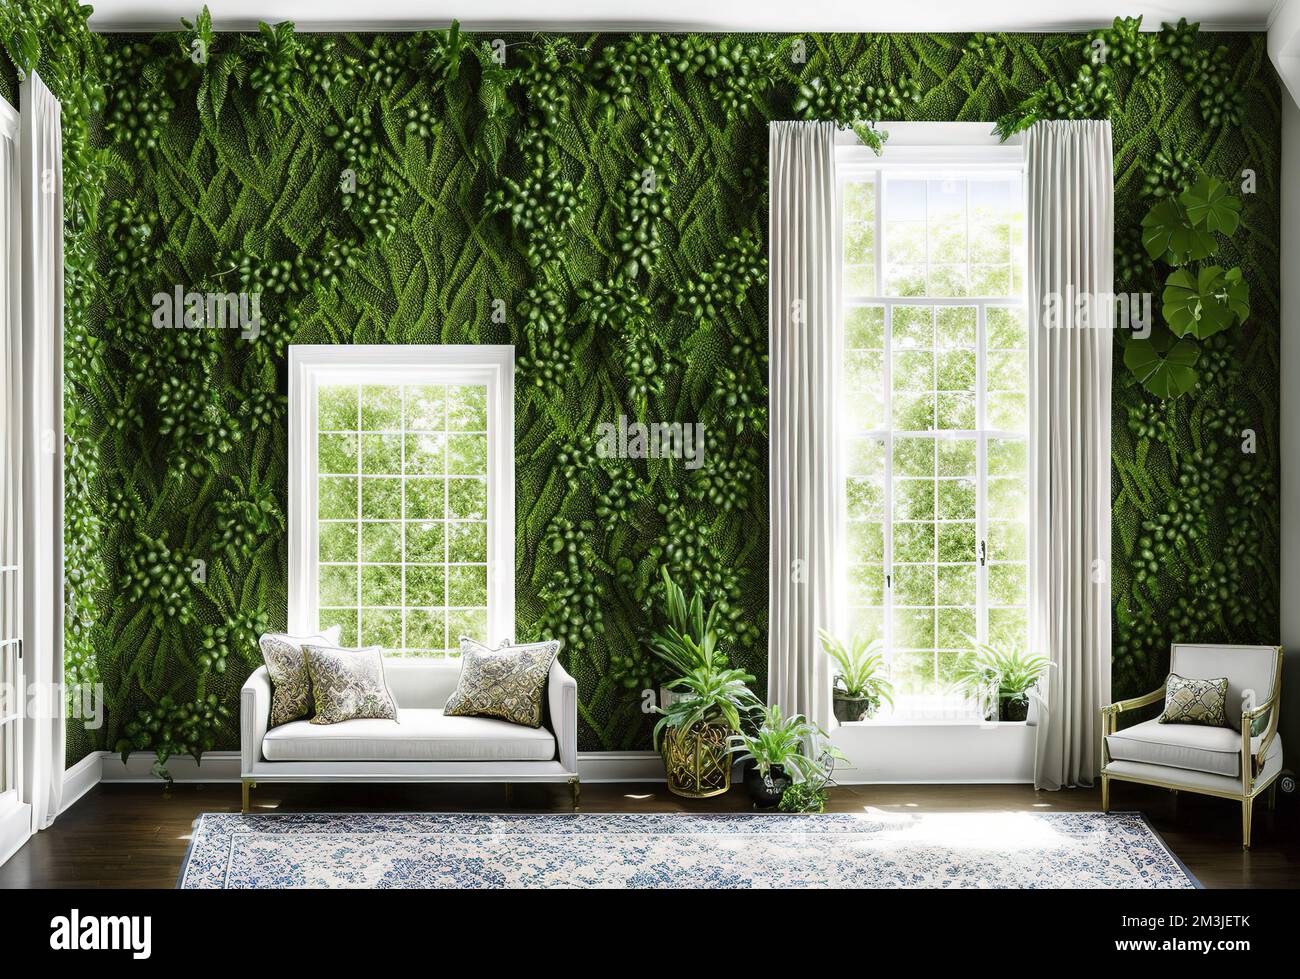 Wohnzimmereinrichtung mit Fenstern und Wänden aus grünen Pflanzen Stockfoto